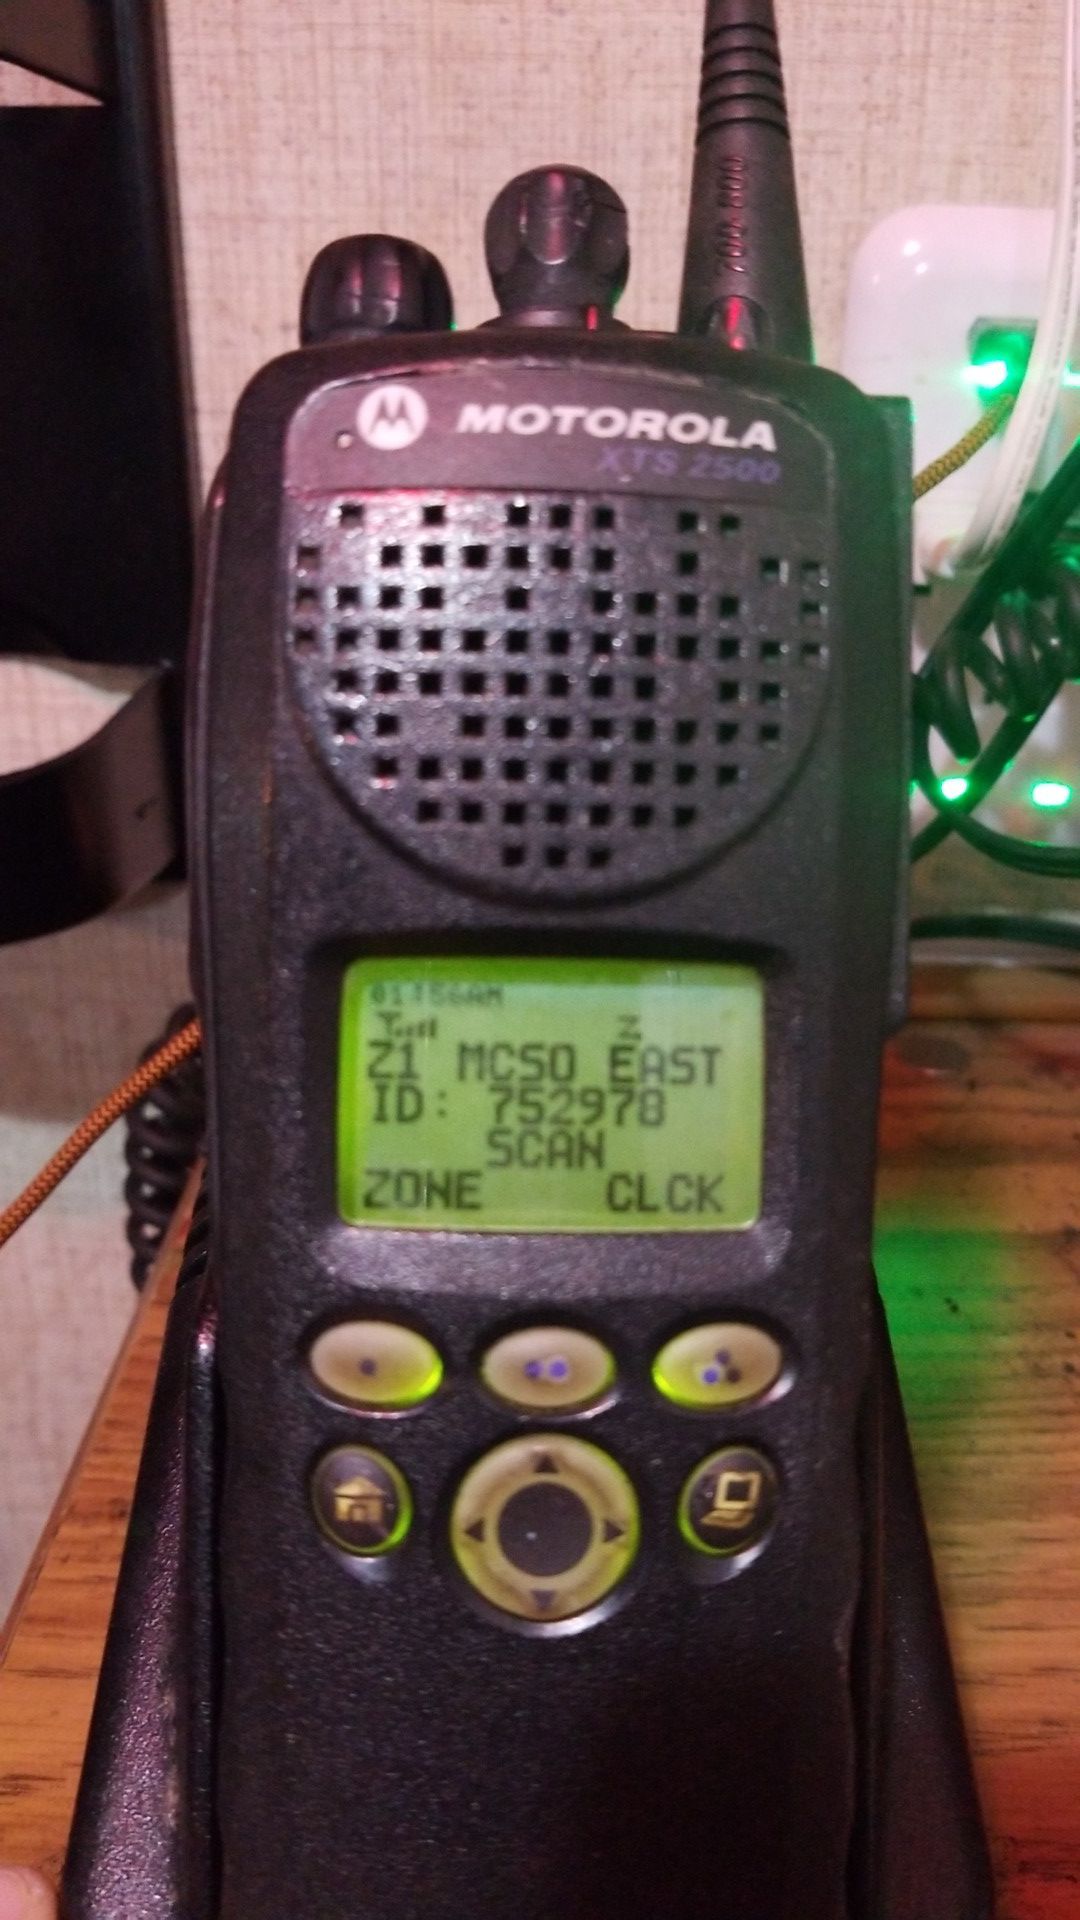 Motorola XTS2500 police radio, used as scanner.